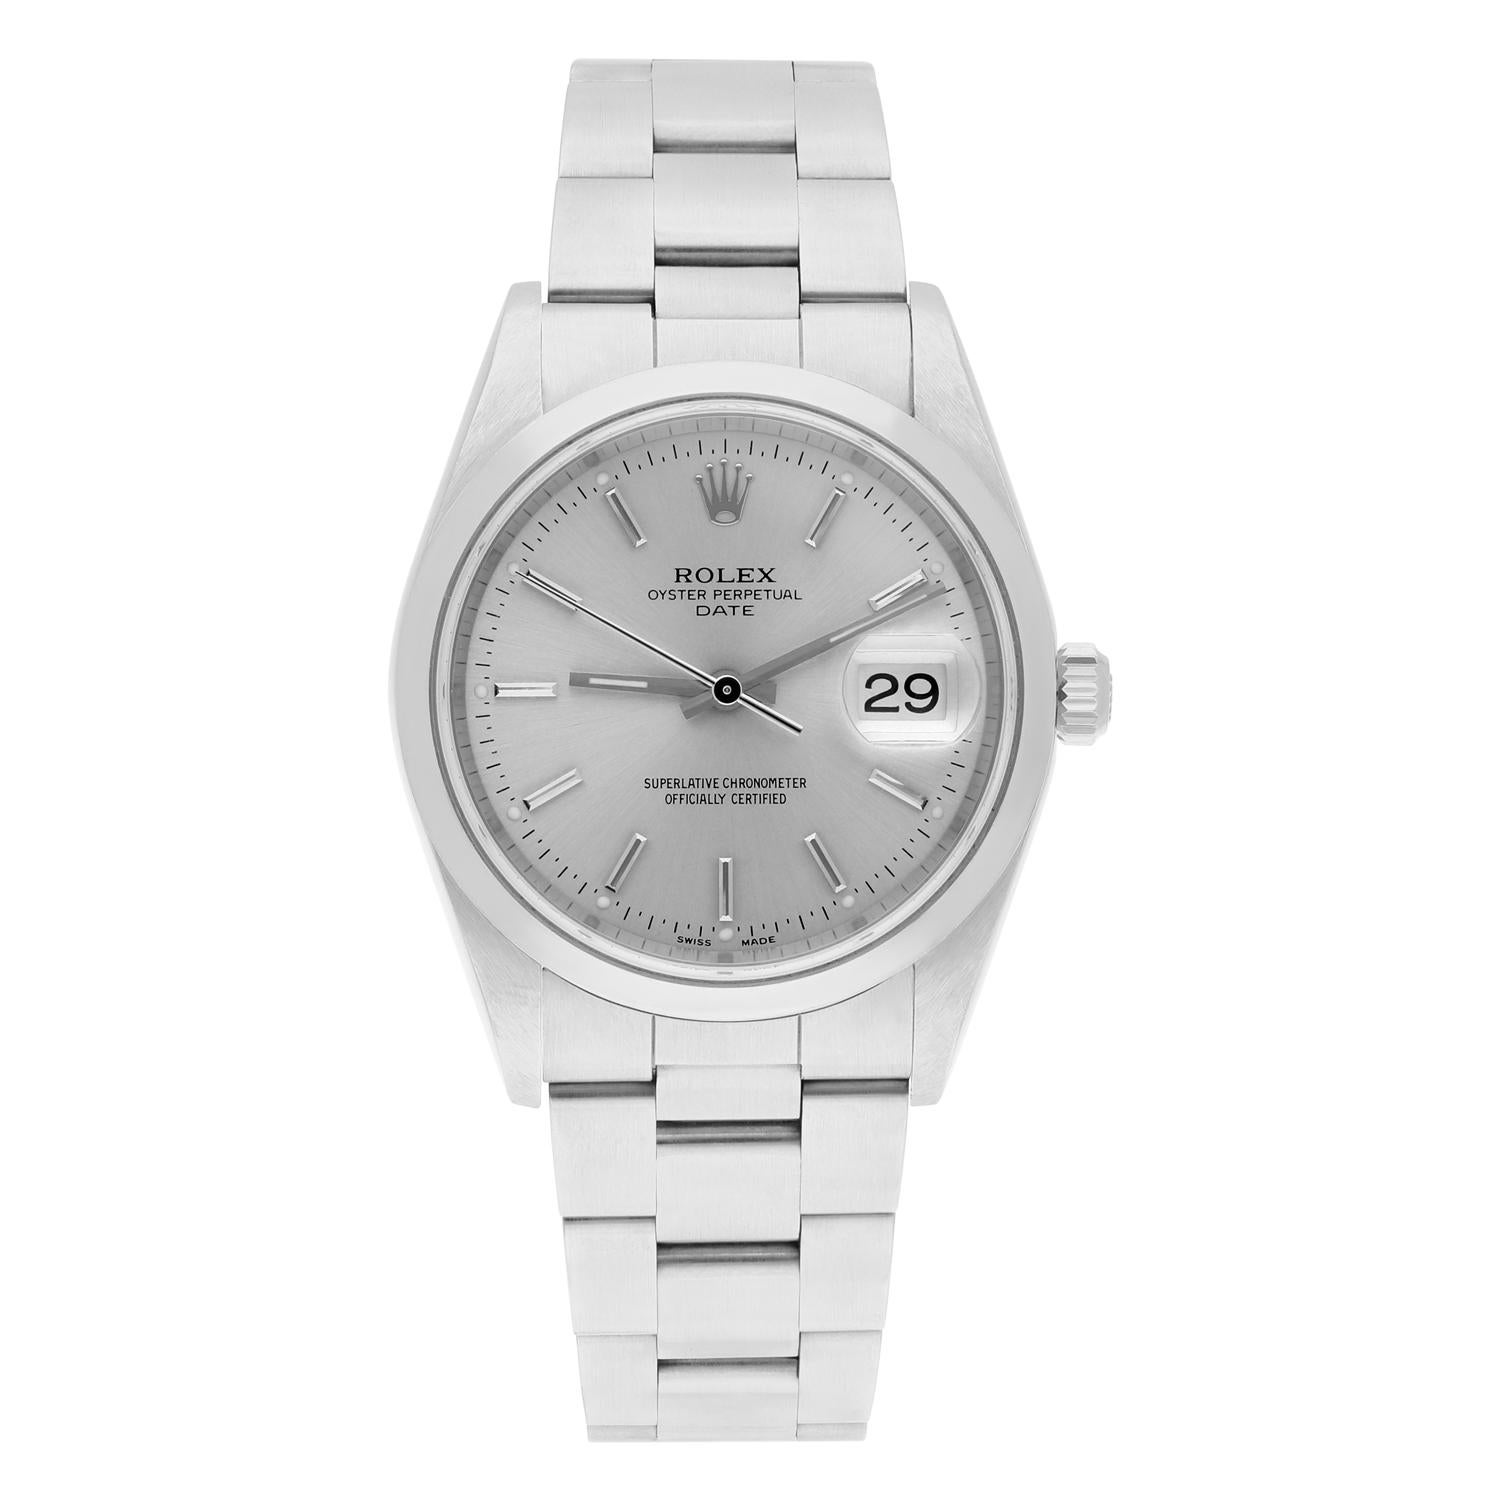 Rolex Date 34mm Stainless Steel Watch Oyster Band Silver Dial Circa 2001 15200

La montre a été professionnellement polie, entretenue et ne présente aucune rayure ou imperfection visible. Authenticité garantie ! La vente est accompagnée d'une boîte